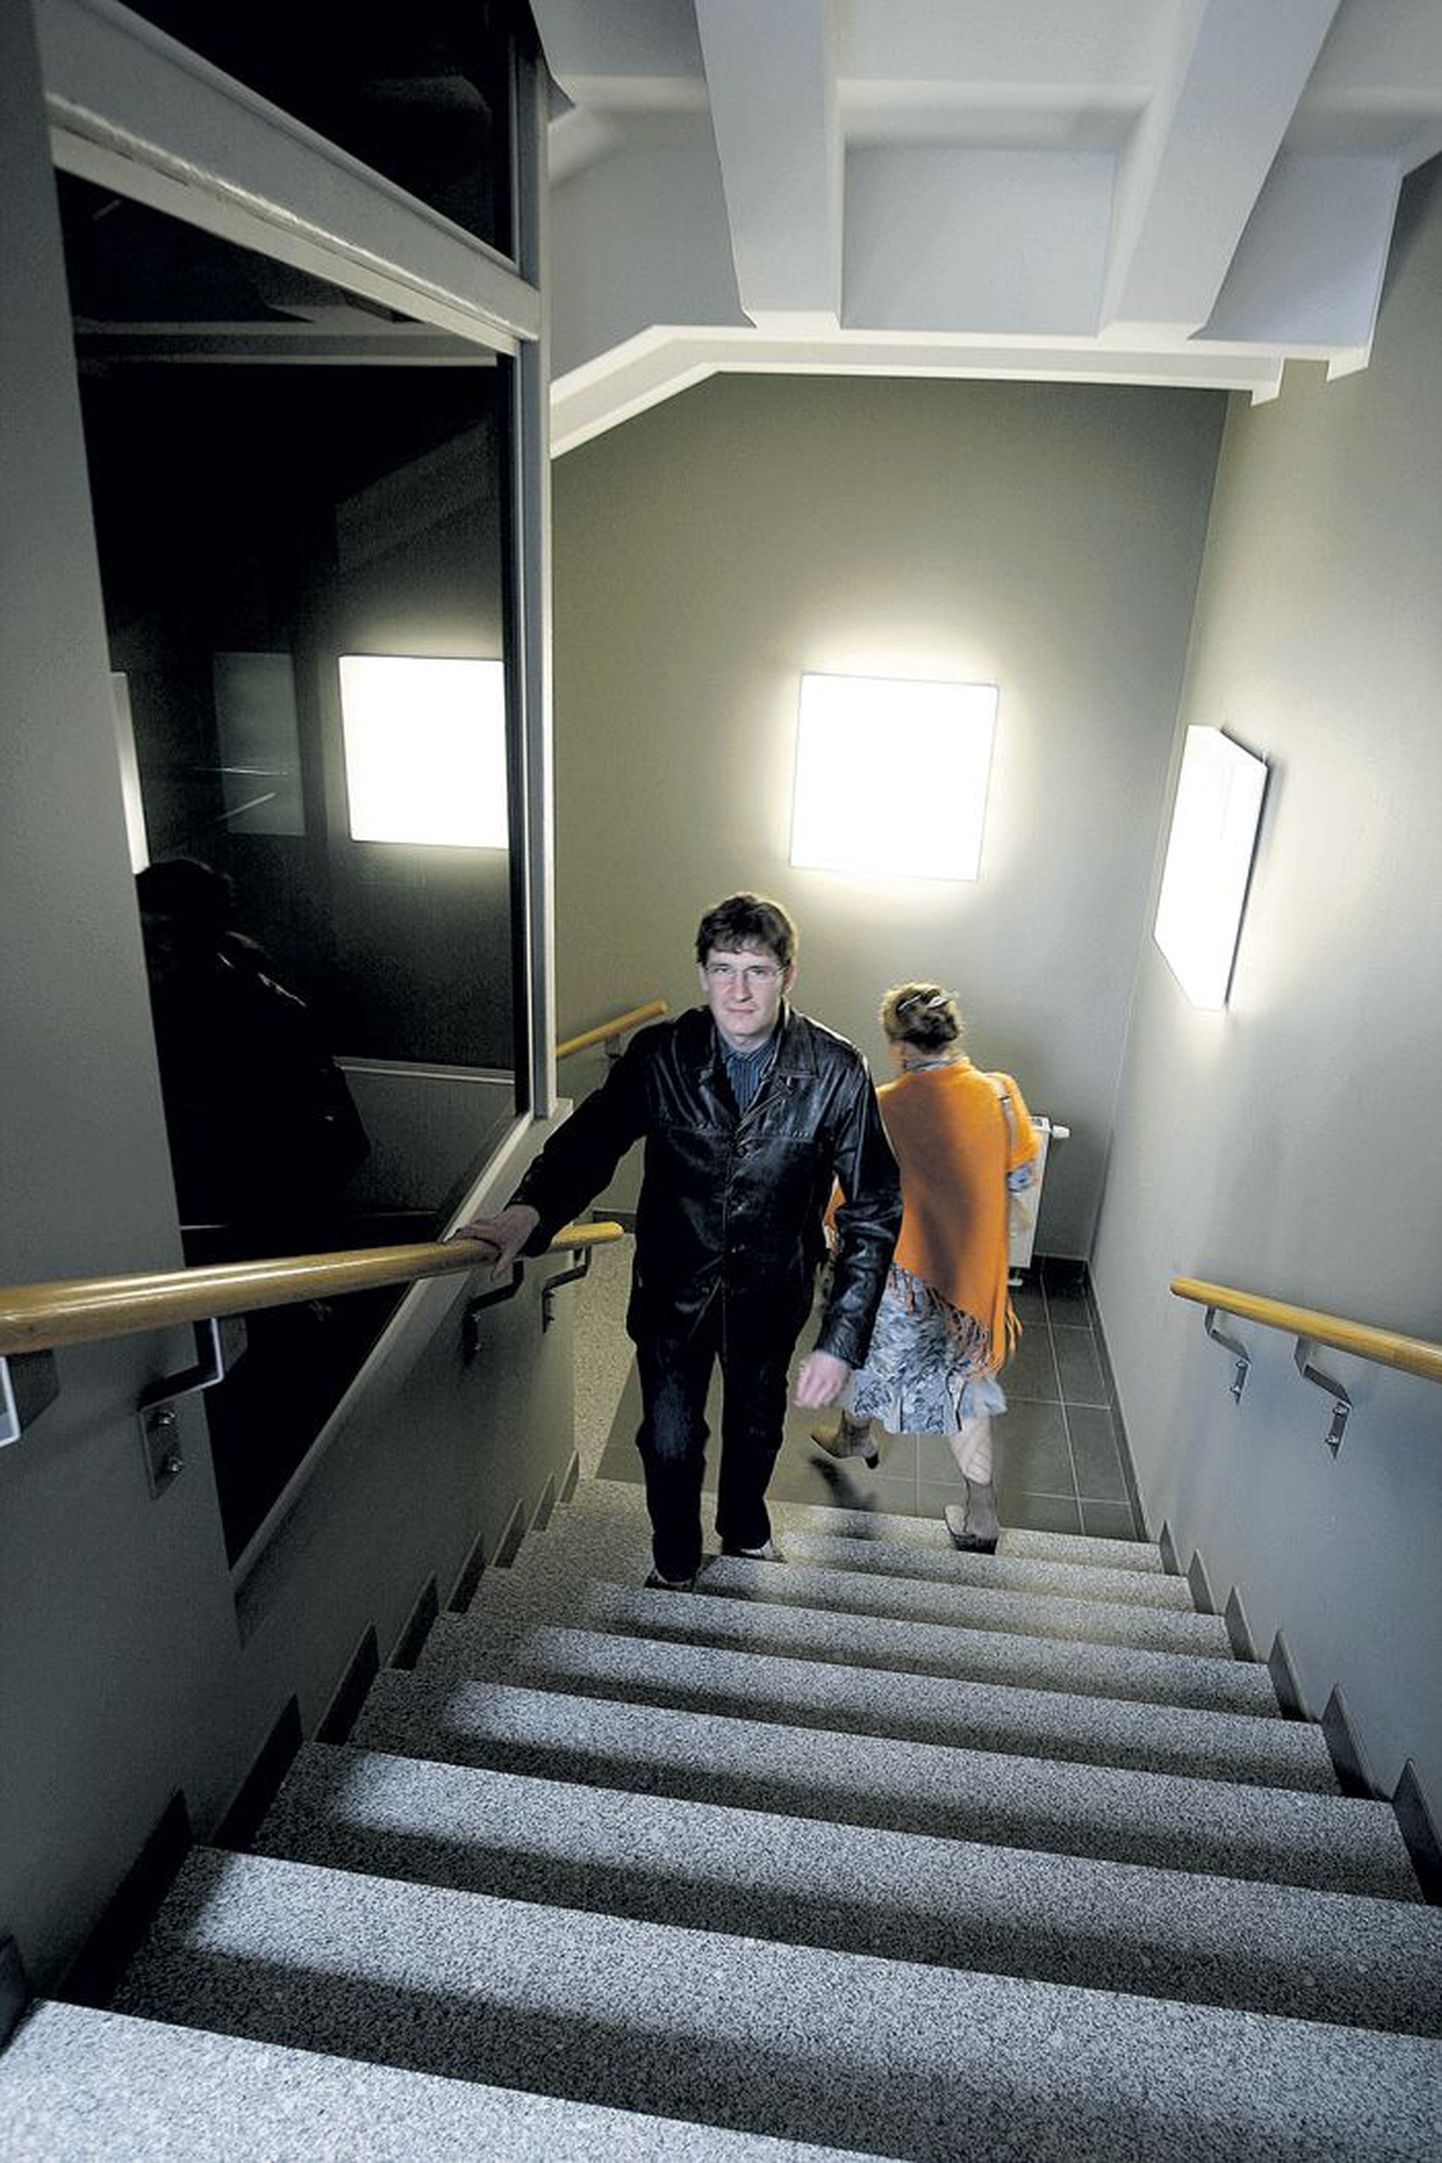 Tasakaaluhäirete all kannatav Martin Tooming kiidab Eesti Maaülikooli uue peahoone liikumistingimusi: treppidel on käsipuud ja kasutada saab lifti.